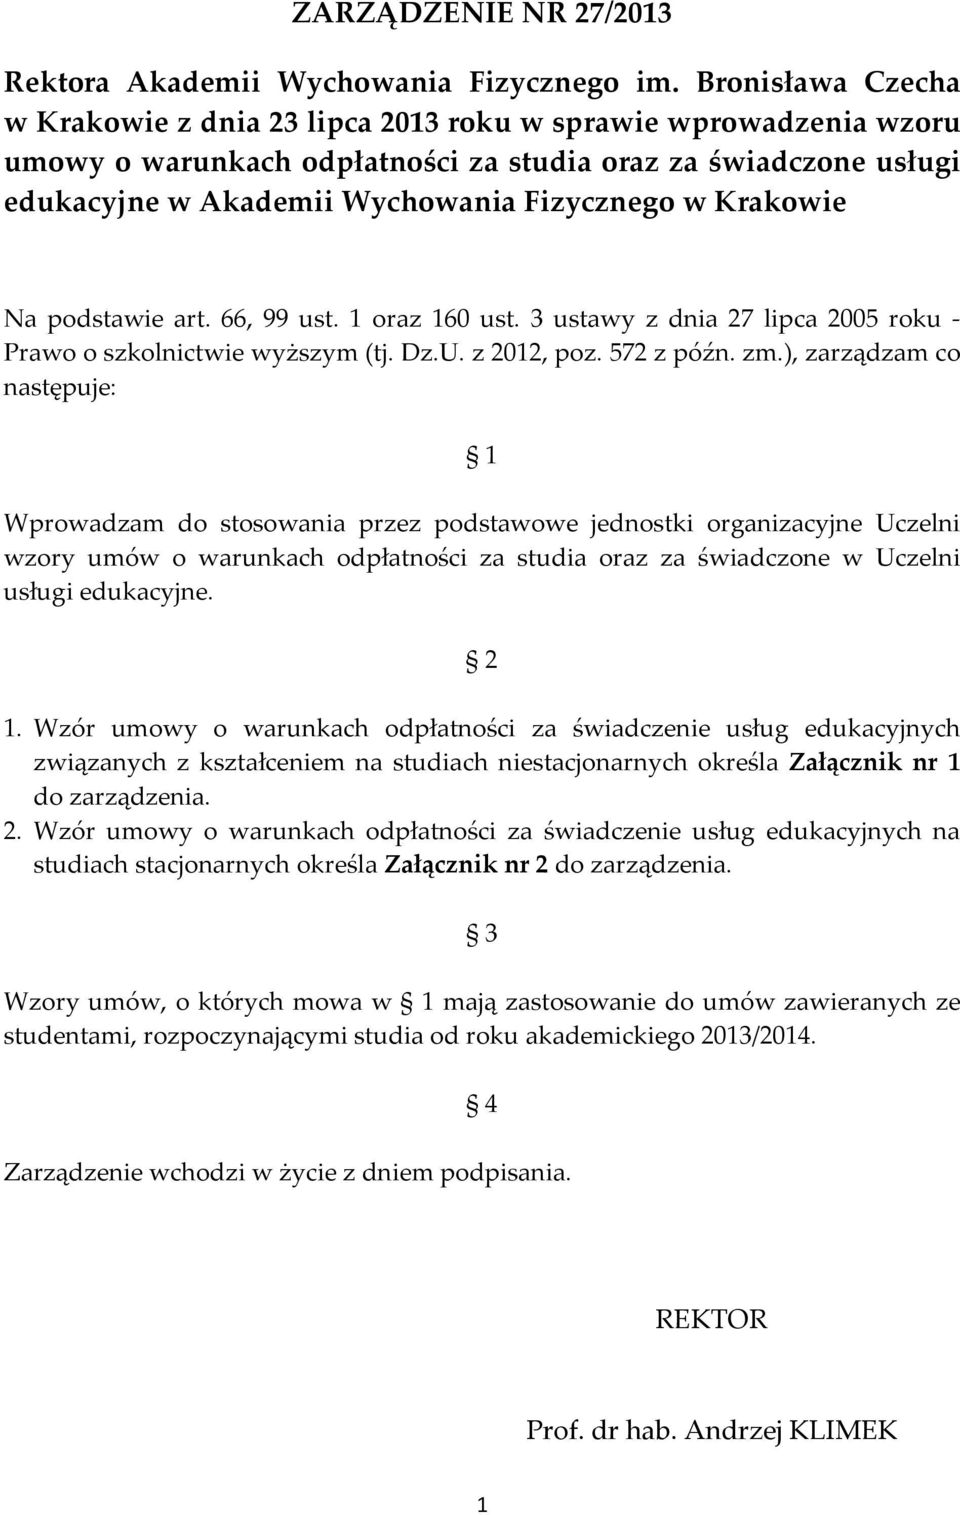 Krakowie Na podstawie art. 66, 99 ust. 1 oraz 160 ust. 3 ustawy z dnia 27 lipca 2005 roku - Prawo o szkolnictwie wyższym (tj. Dz.U. z 2012, poz. 572 z późn. zm.